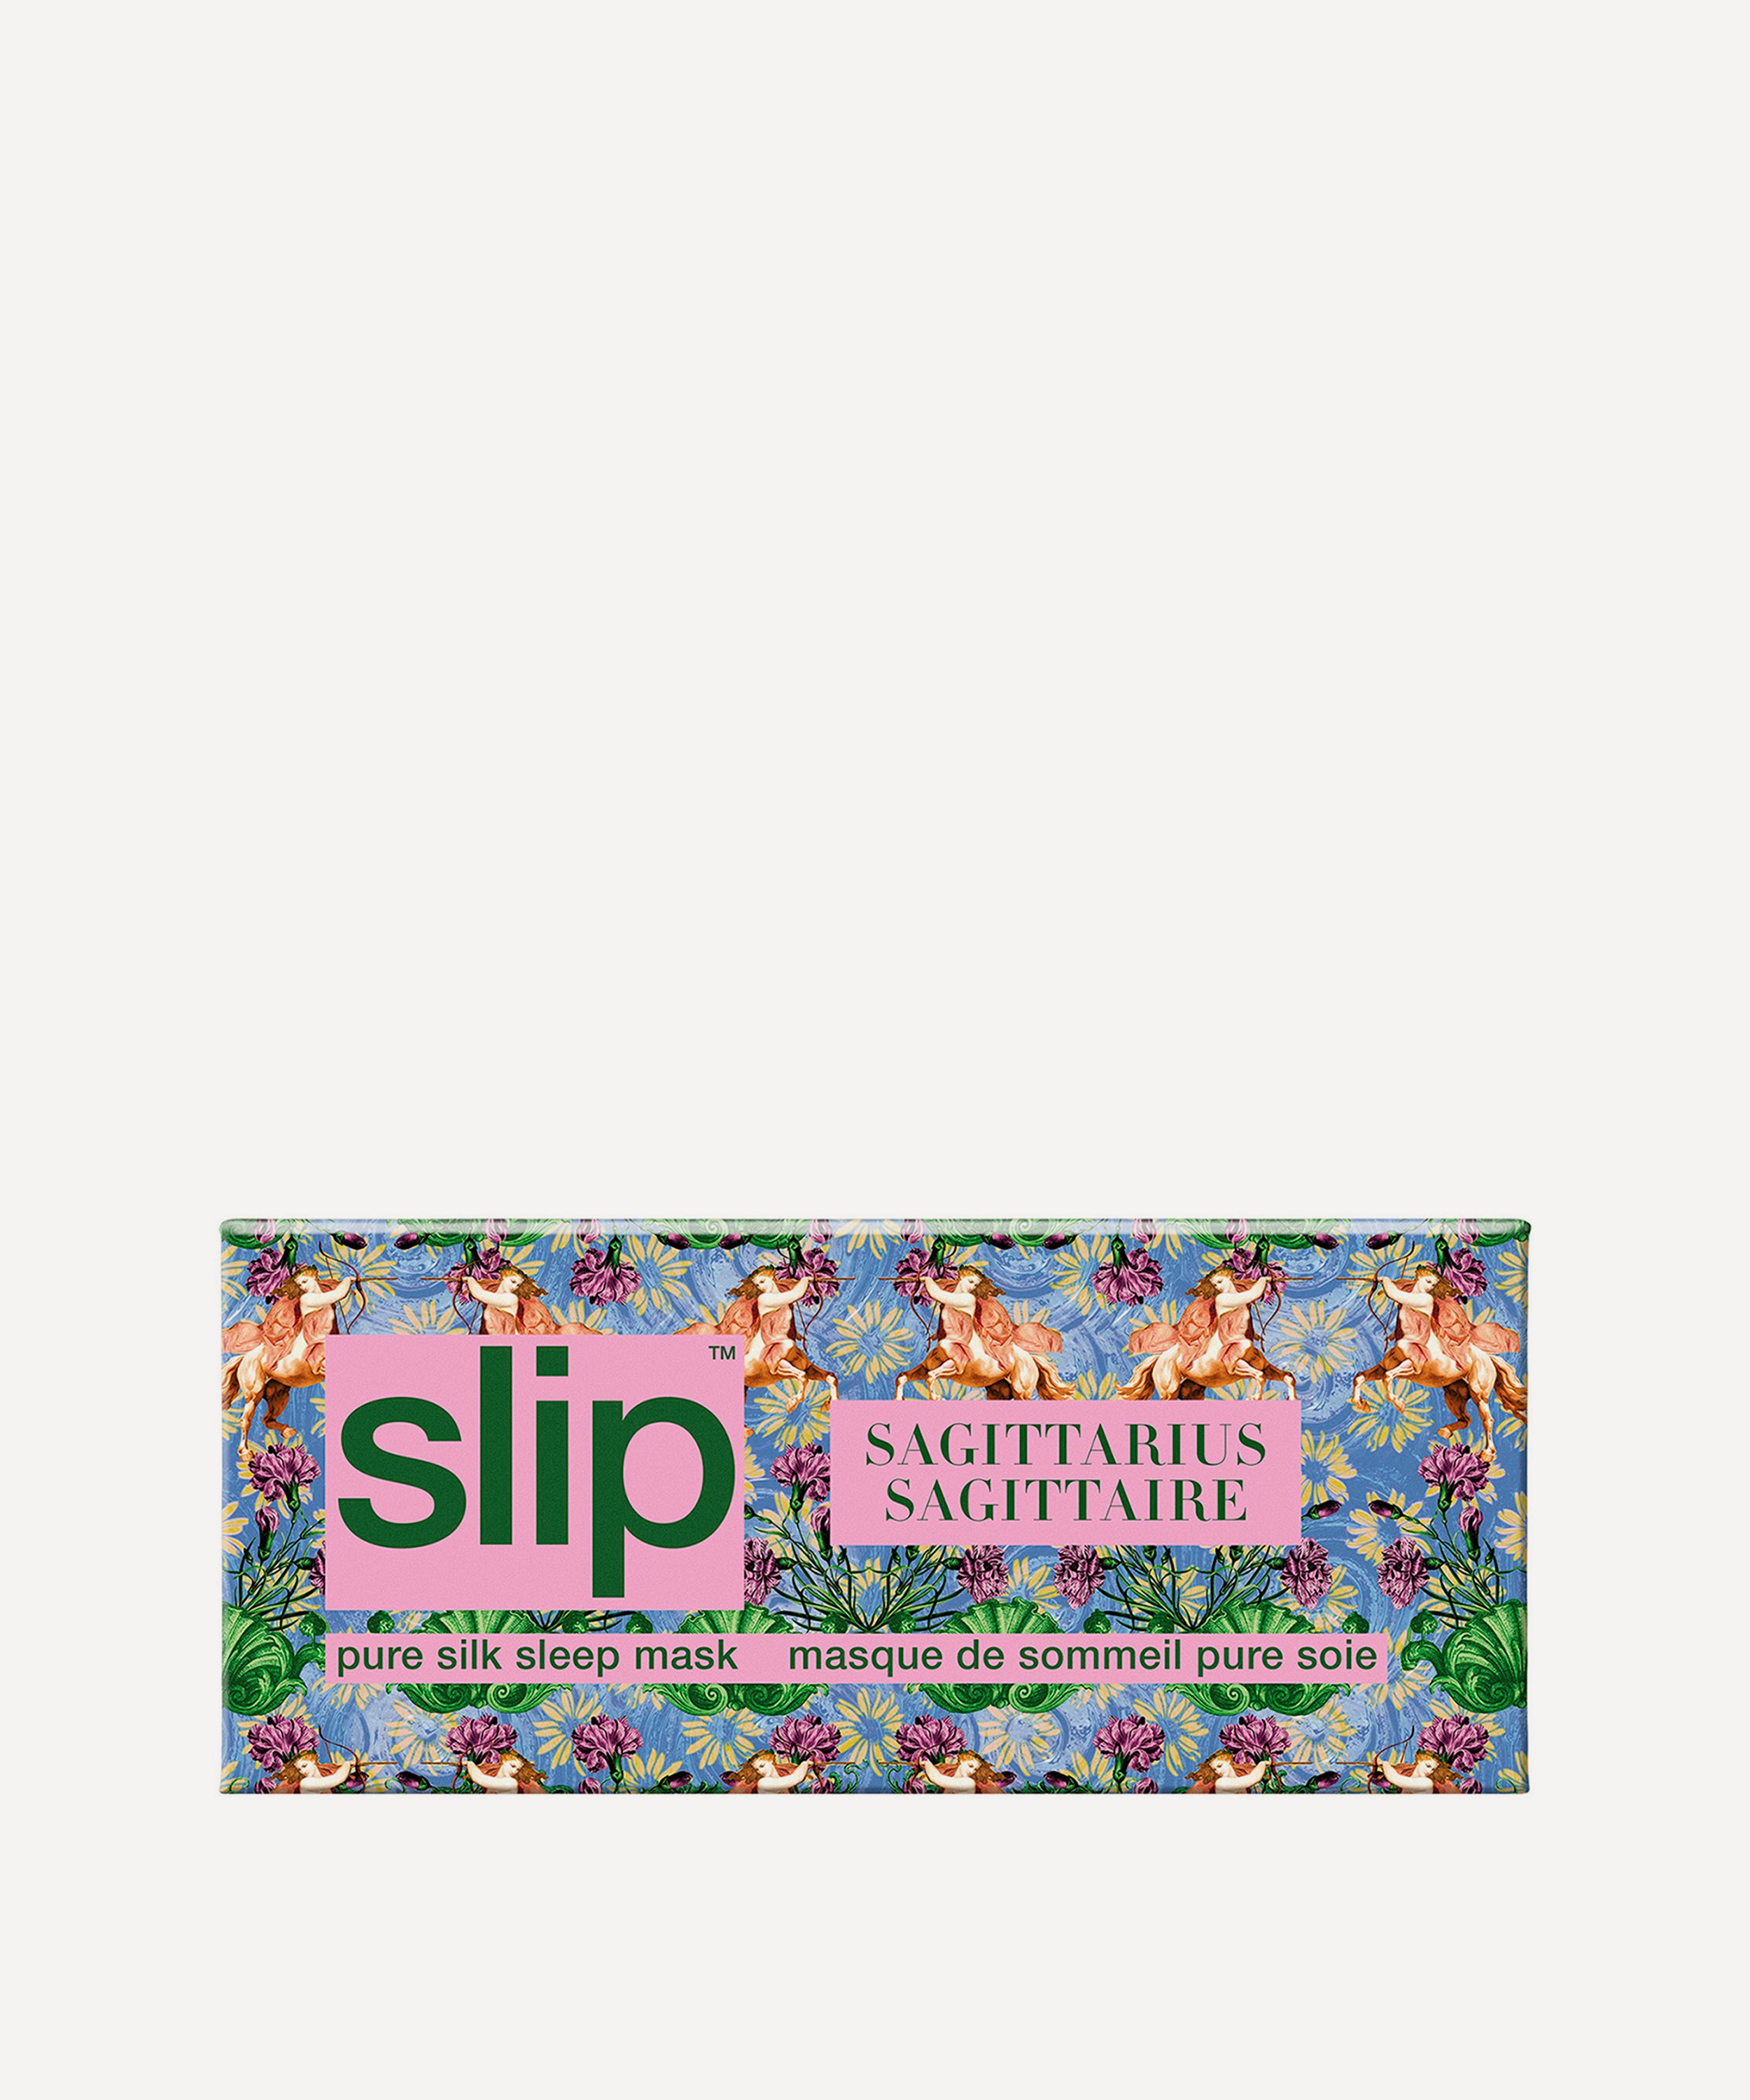 Slip - Sagittarius Silk Sleep Mask image number 3